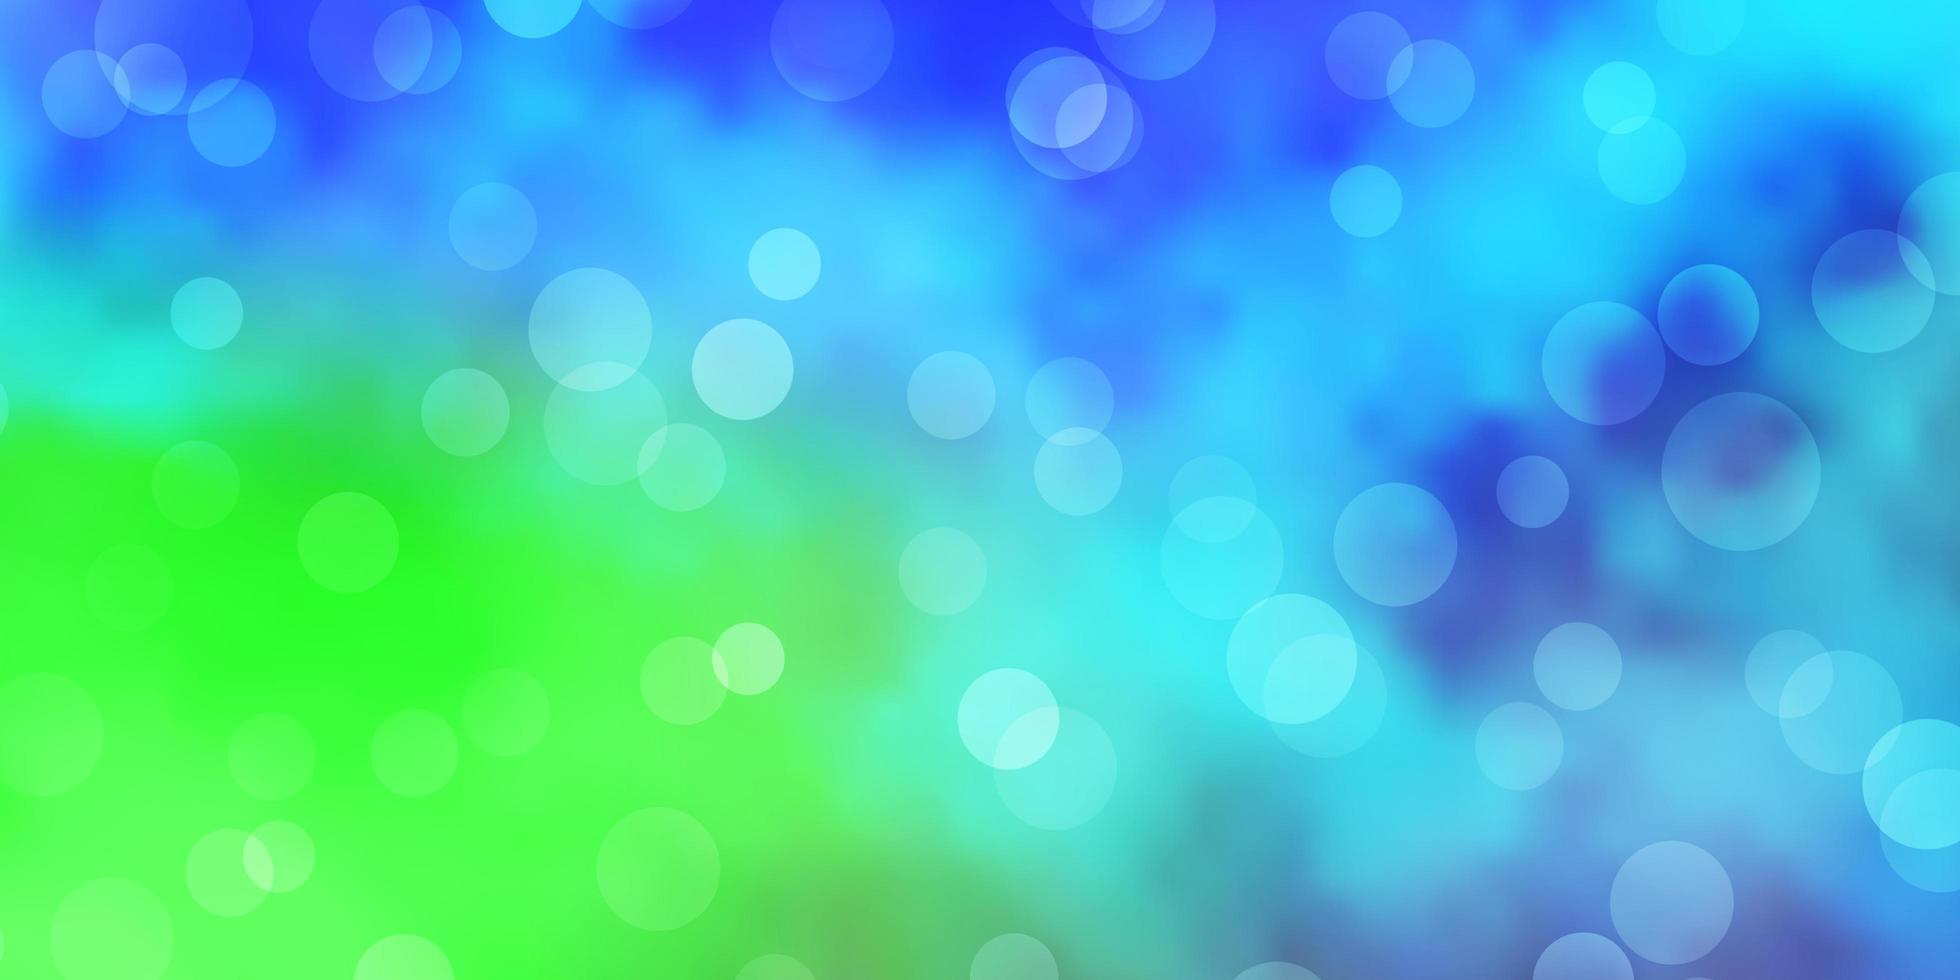 motif vectoriel bleu clair et vert avec des sphères. illustration avec un ensemble de sphères abstraites colorées brillantes. modèle pour les annonces commerciales.